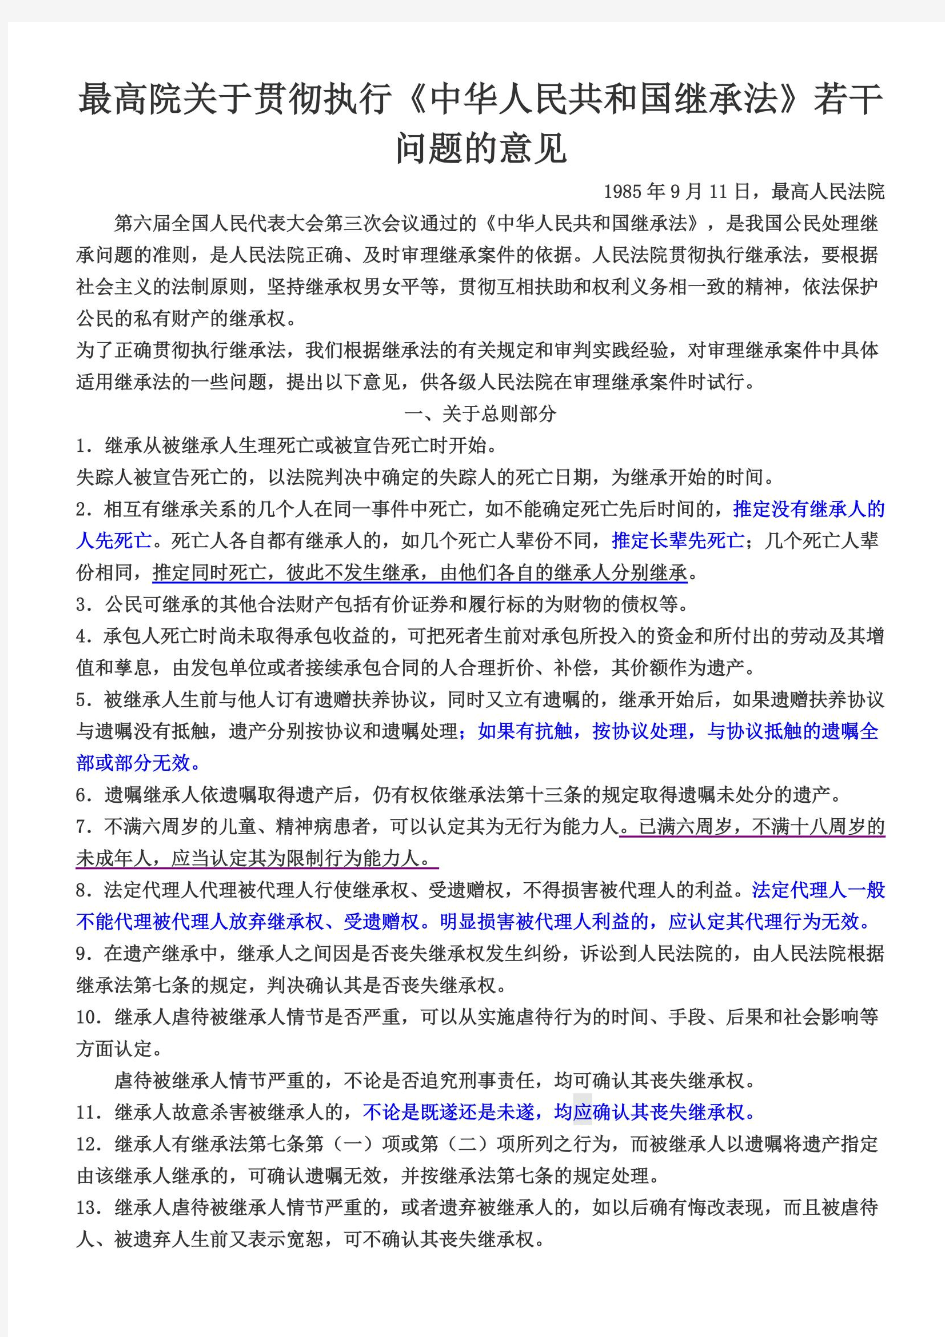 最高院关于贯彻执行《中华人民共和国继承法》若干问题的意见——已经画好重点与实用条款咯!